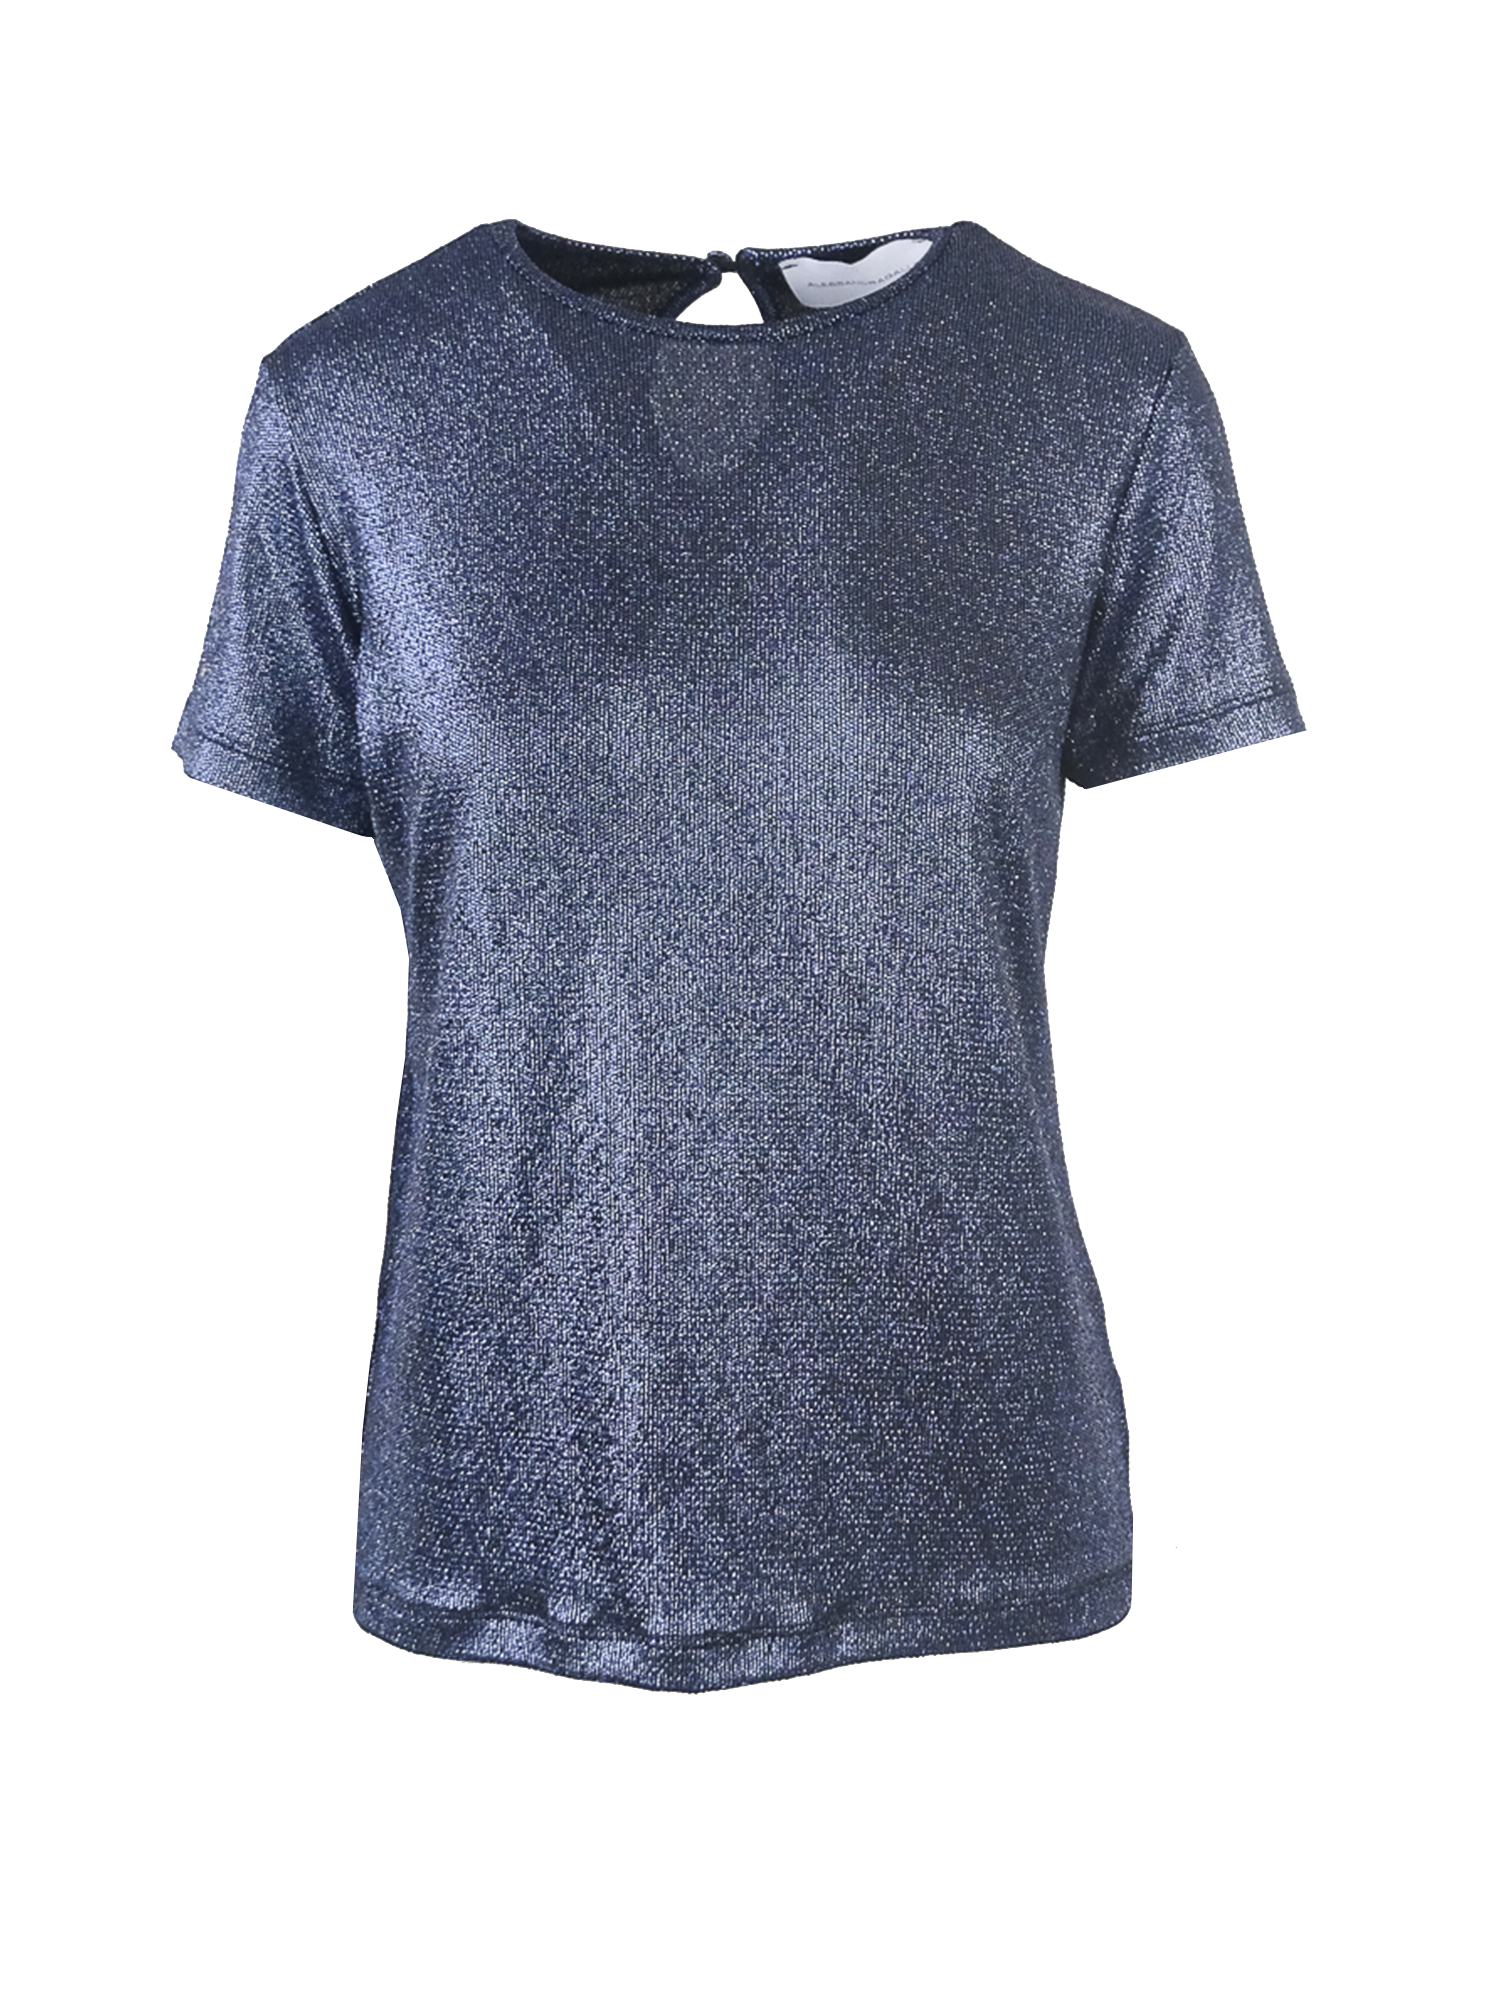 CARMEN - blue lurex t-shirt